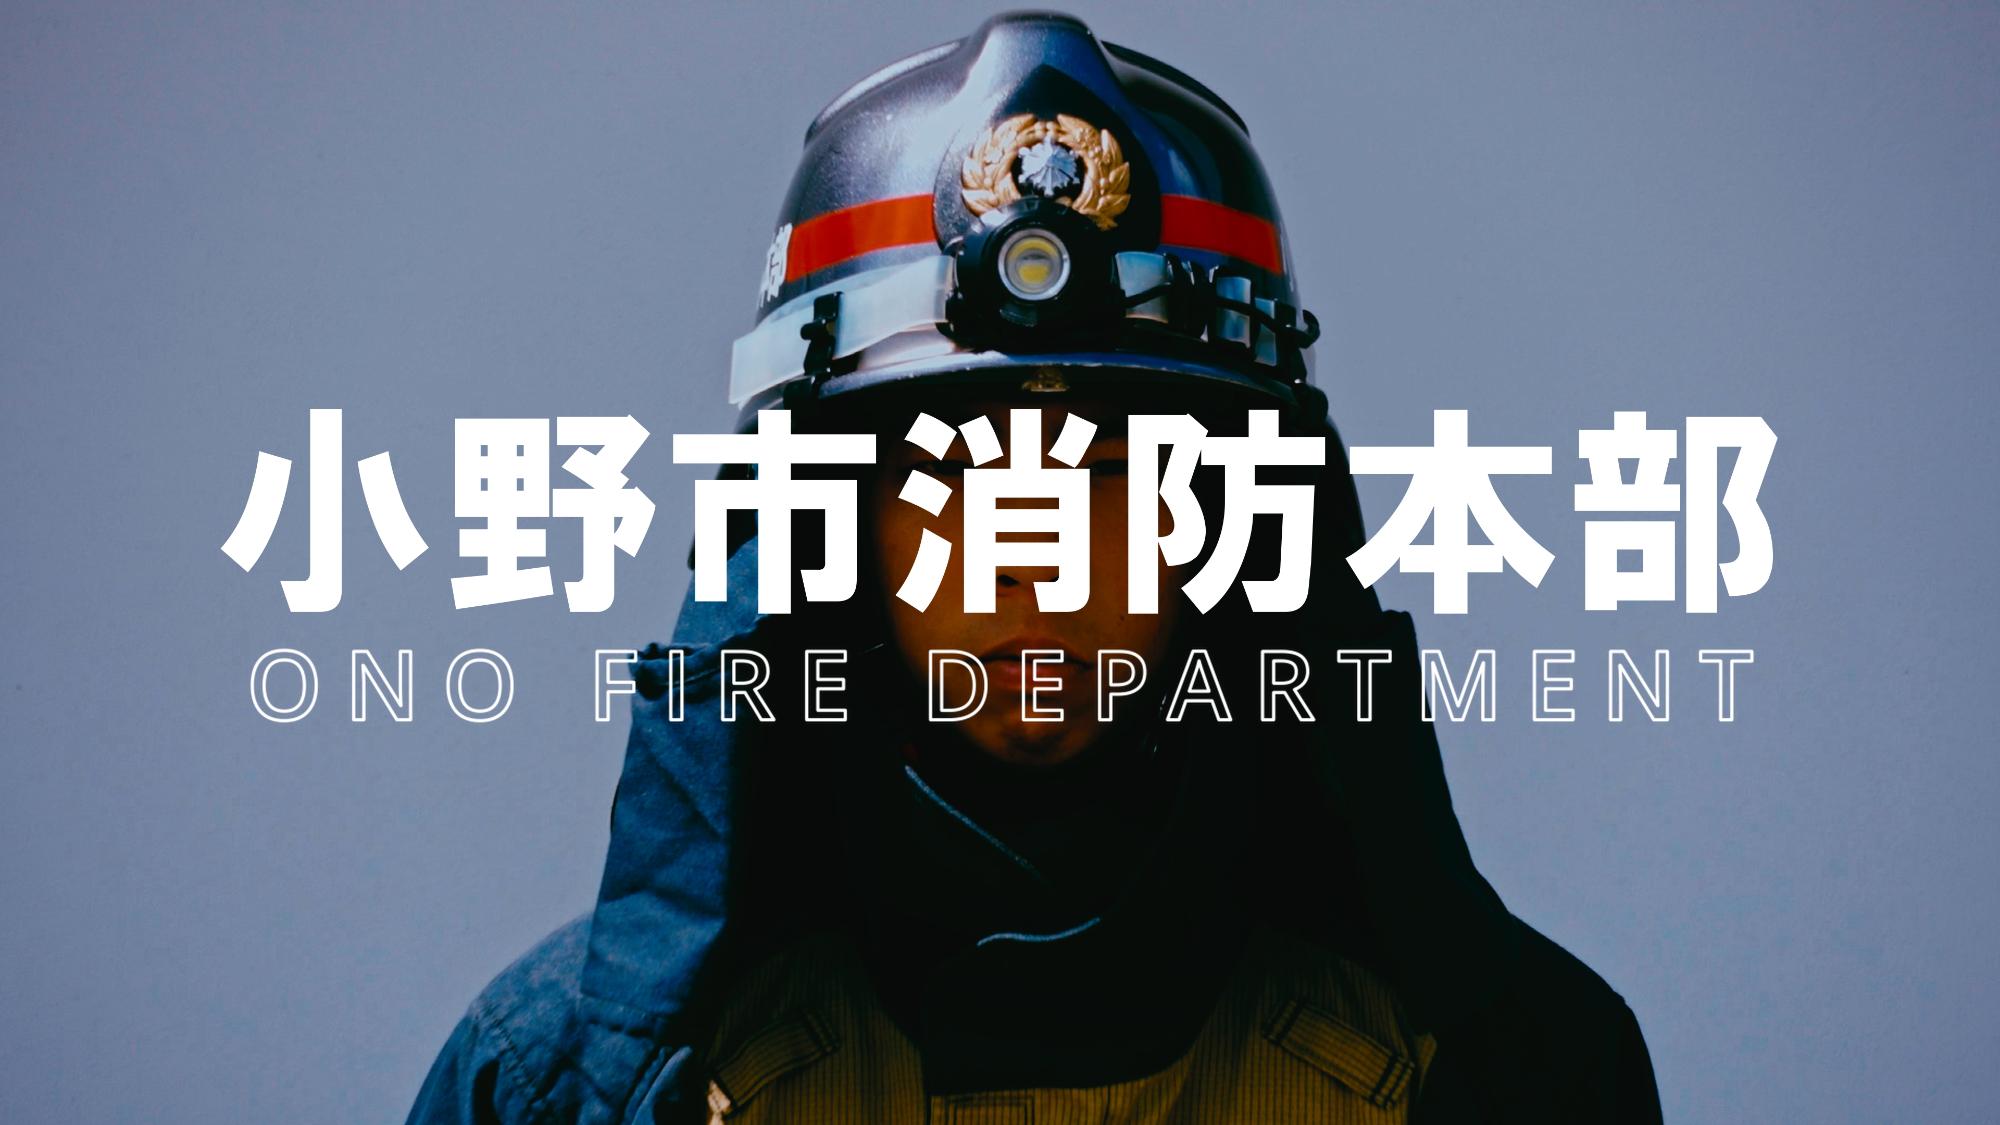 小野市消防本部PR動画のサムネイル写真